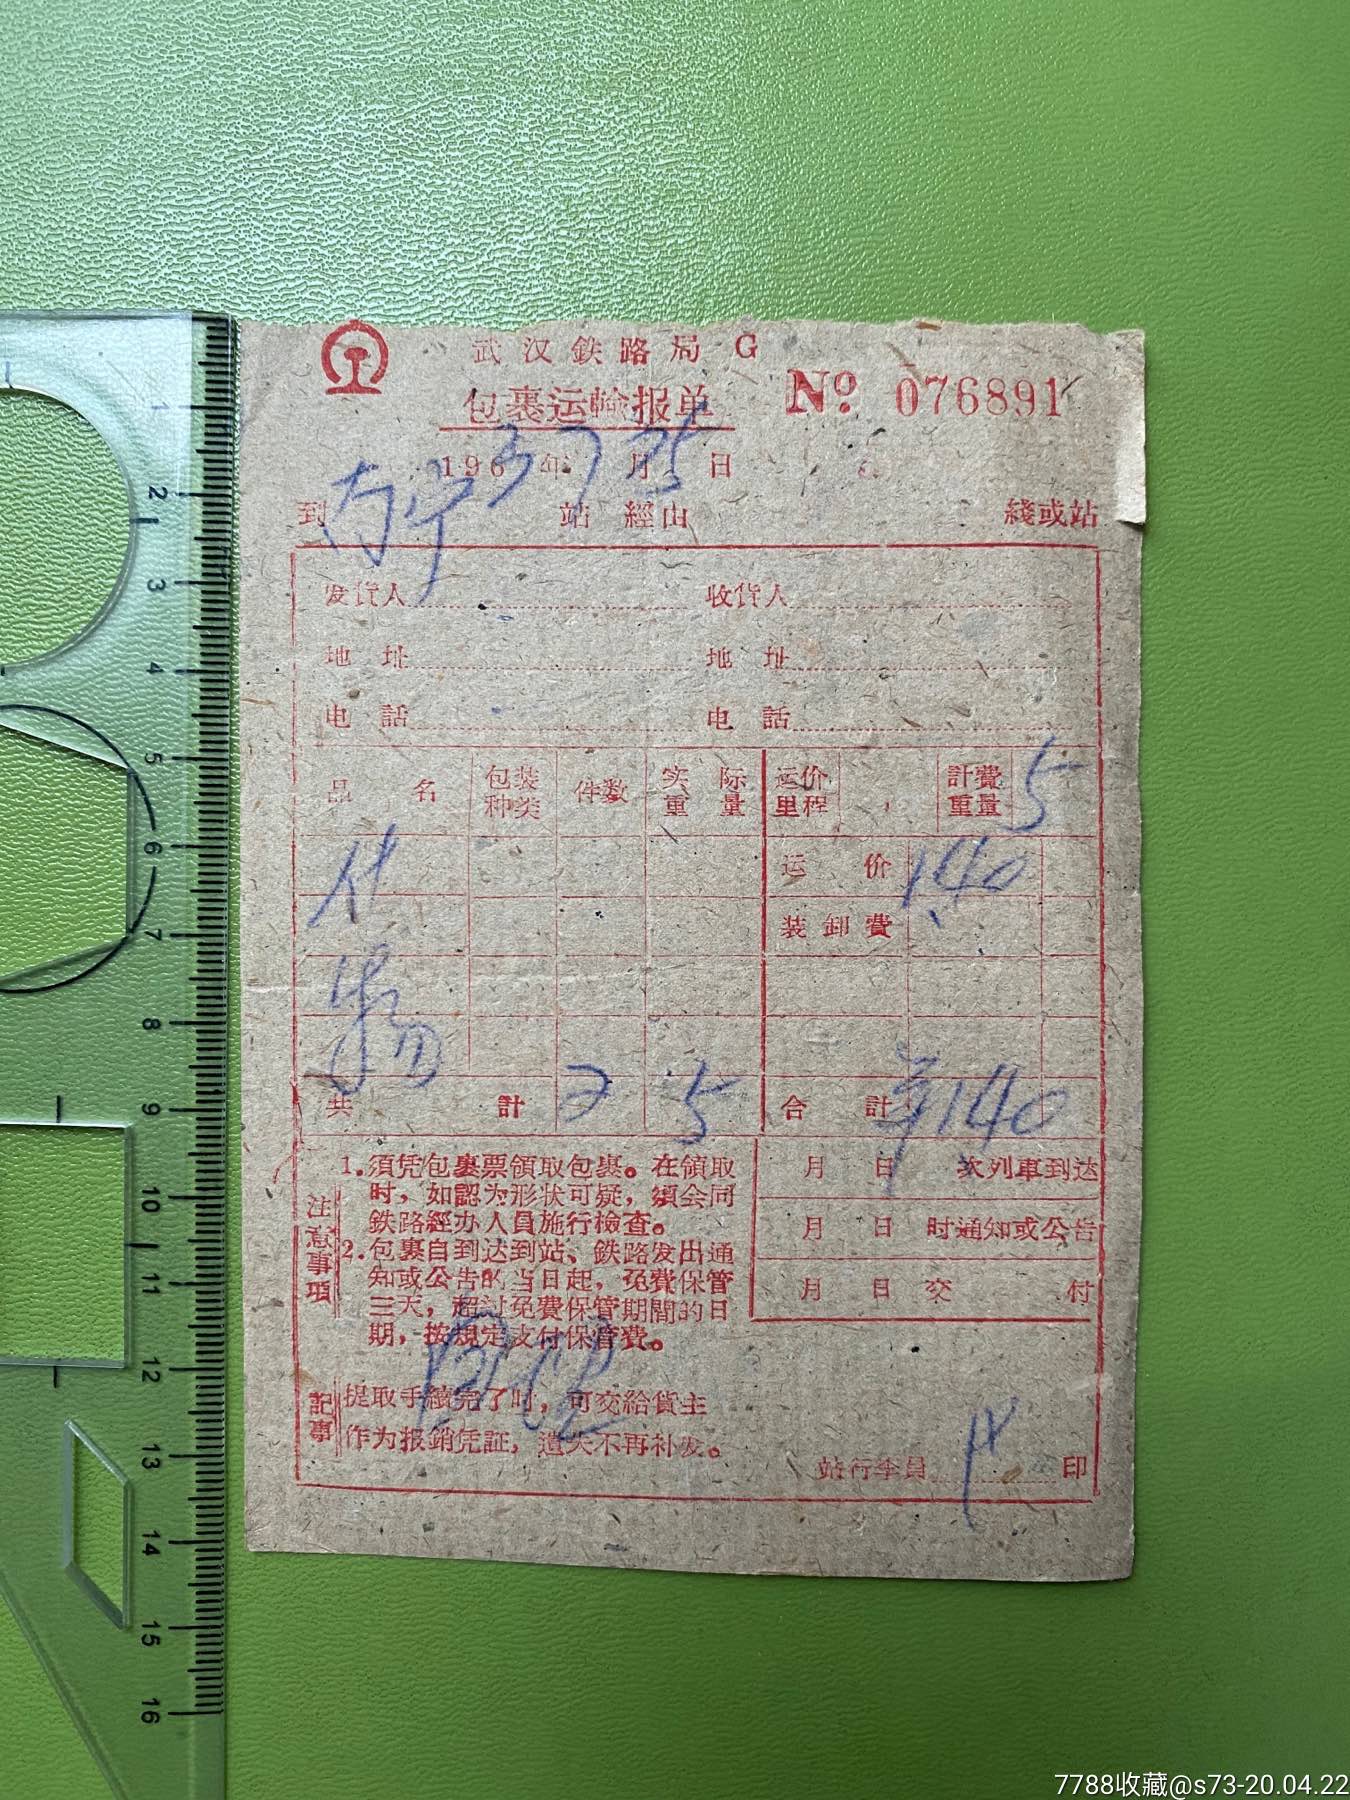 武汉铁路局包裹运输报单